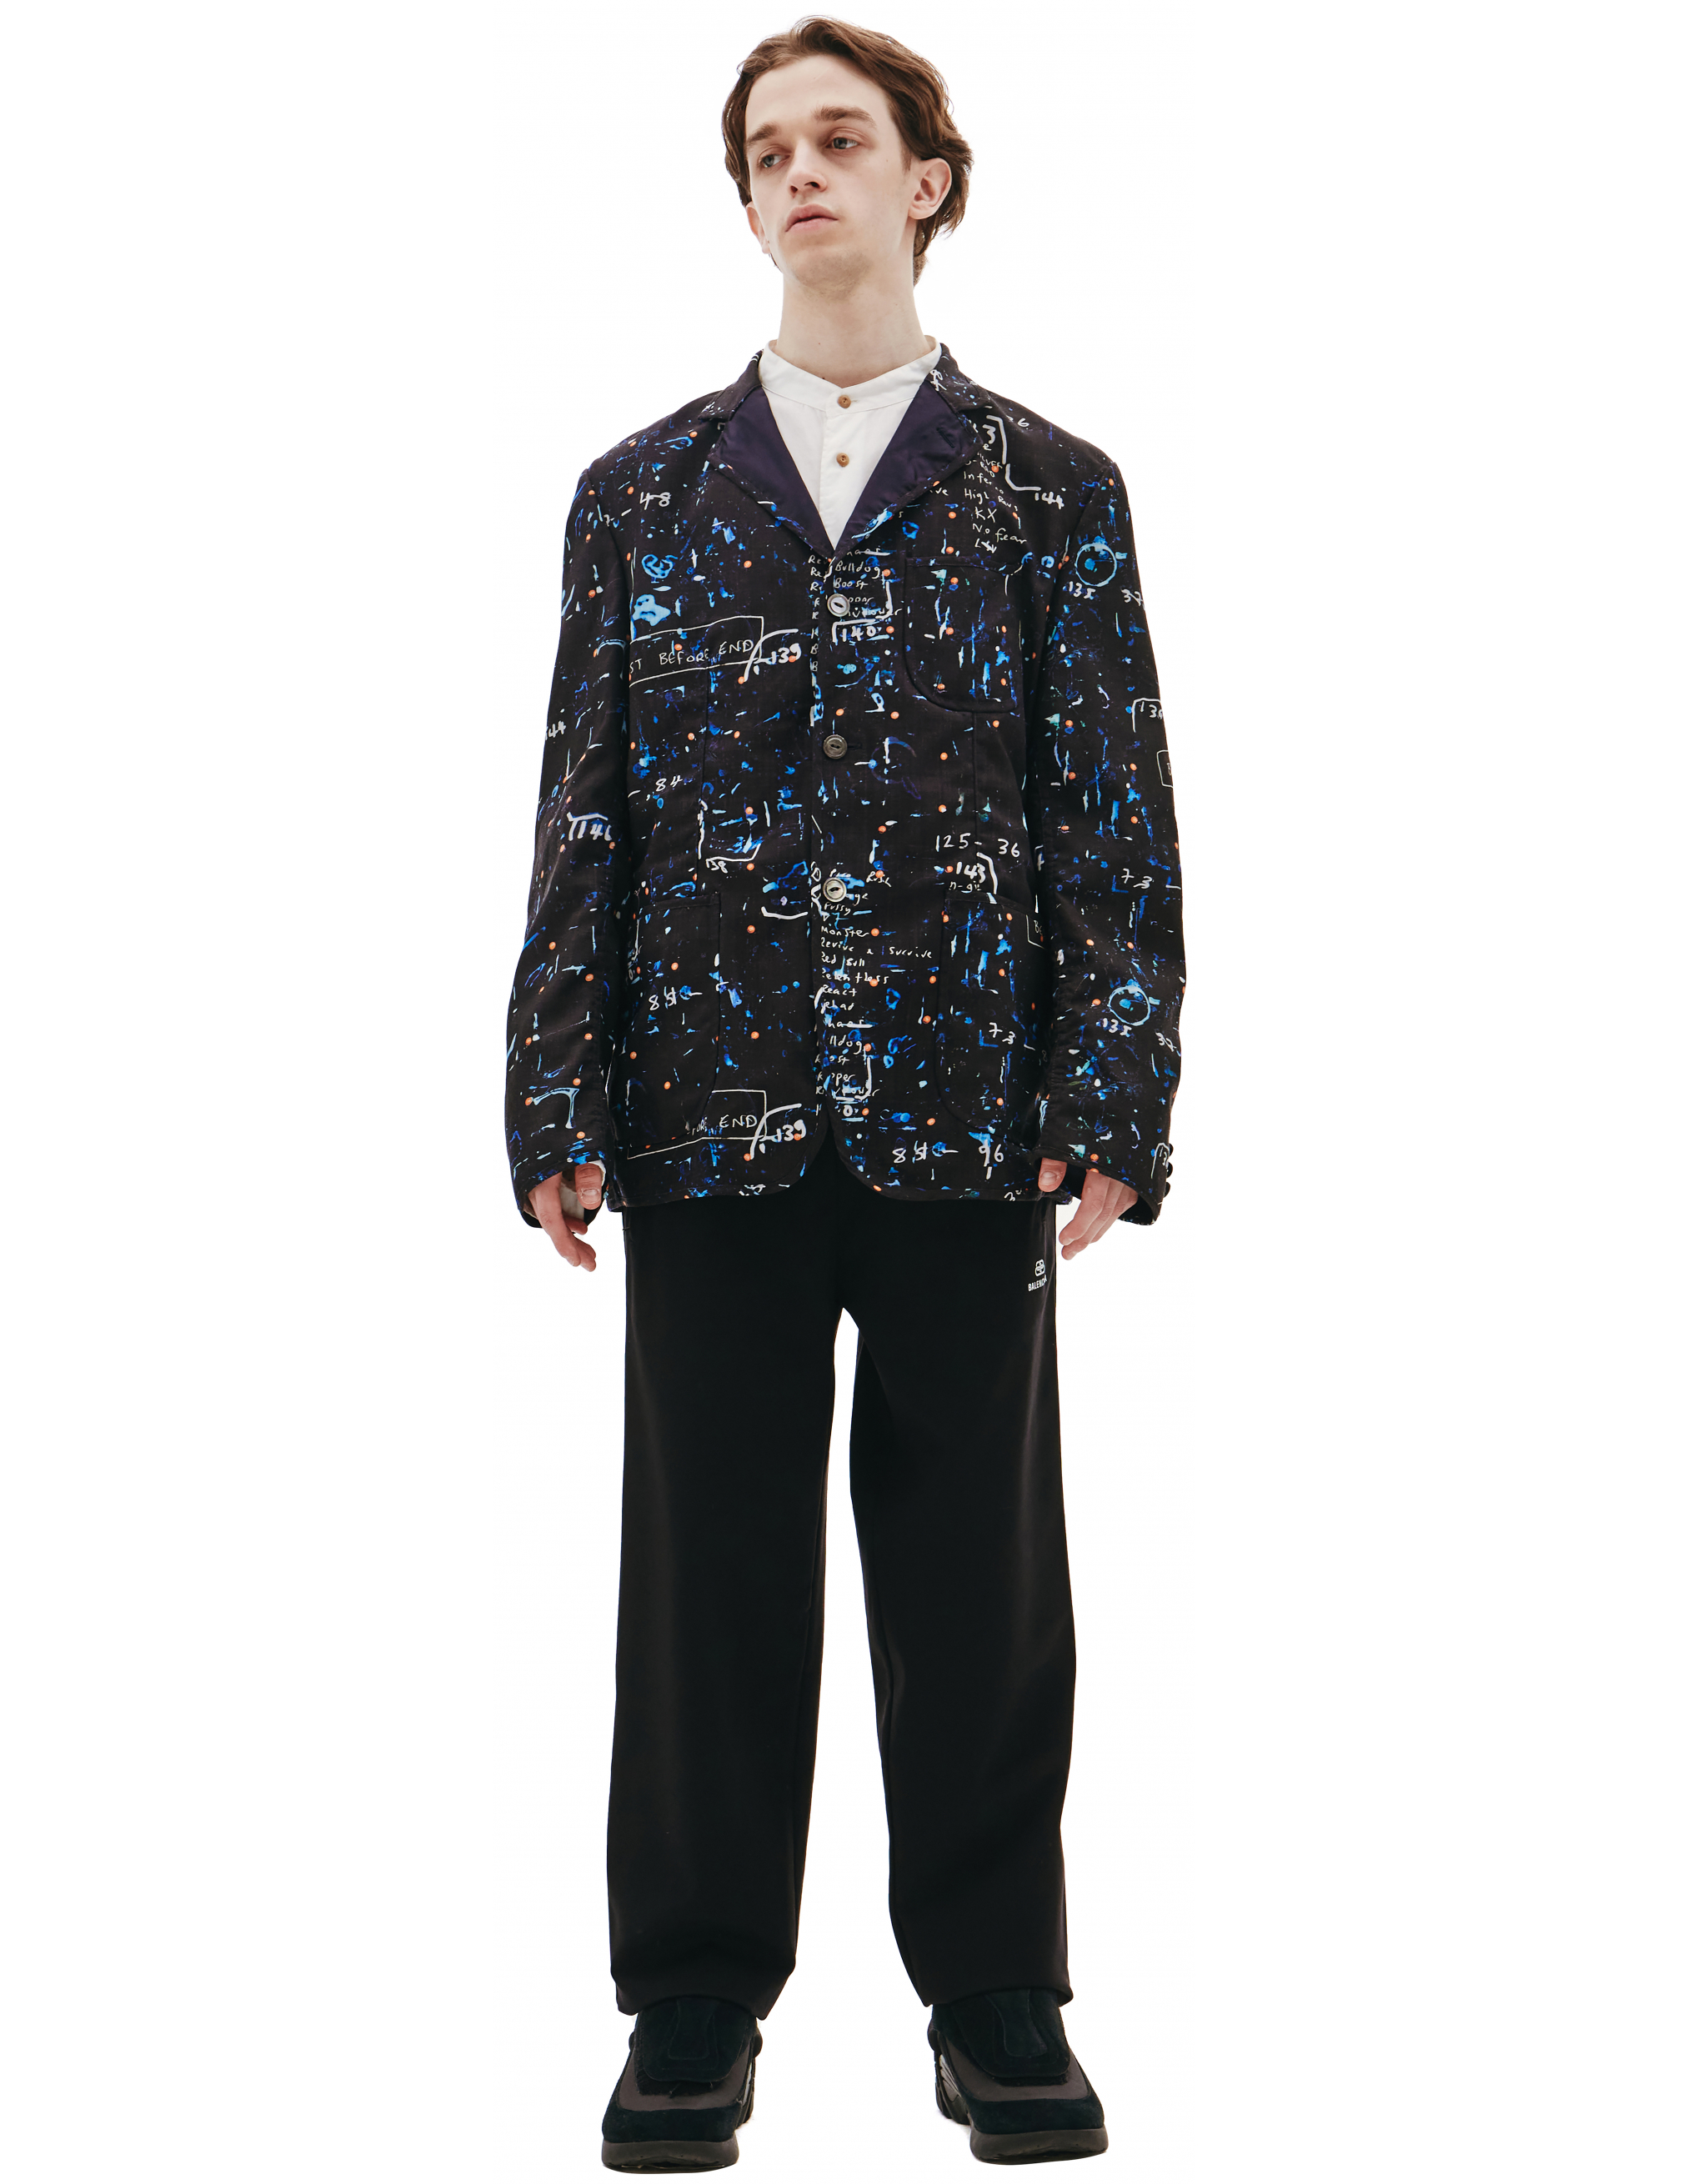 Черный пиджак из шерсти - Junya Watanabe WG-J004-051-1